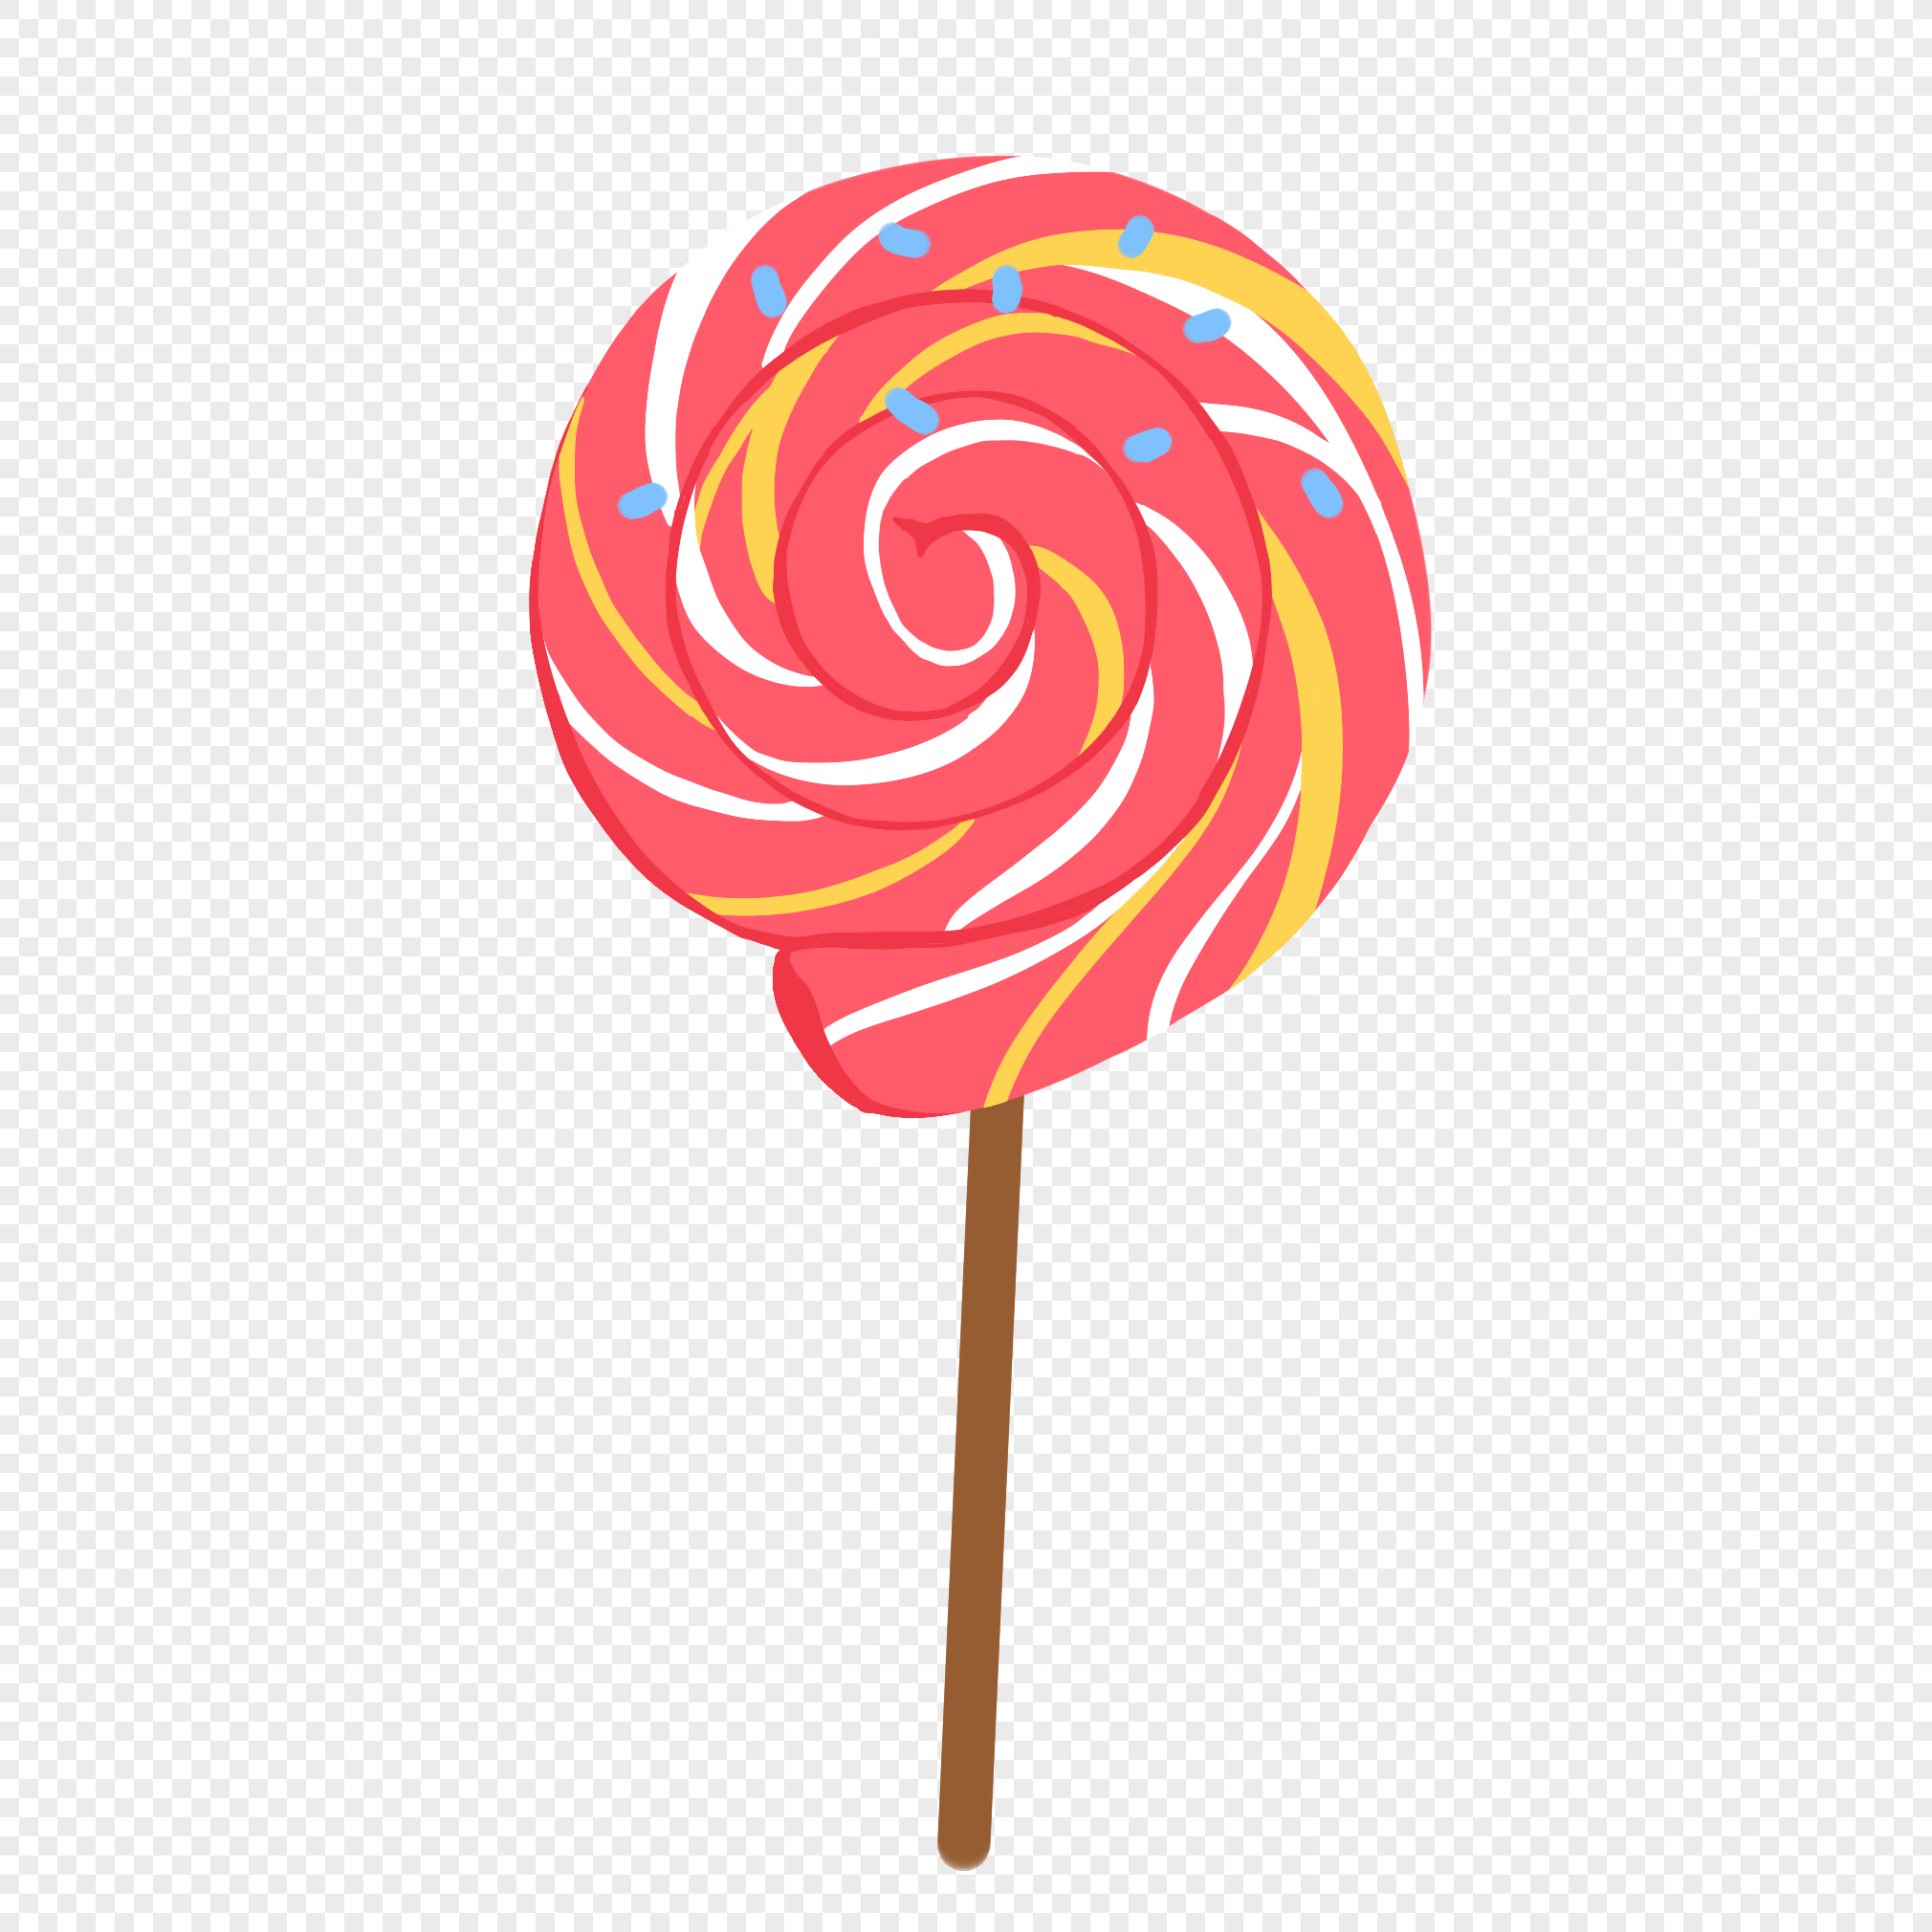 五彩繽紛的糖果圓卡通矢量圖, 糖果, 棒棒糖, 可愛的糖果素材圖案，PSD和PNG圖片免費下載